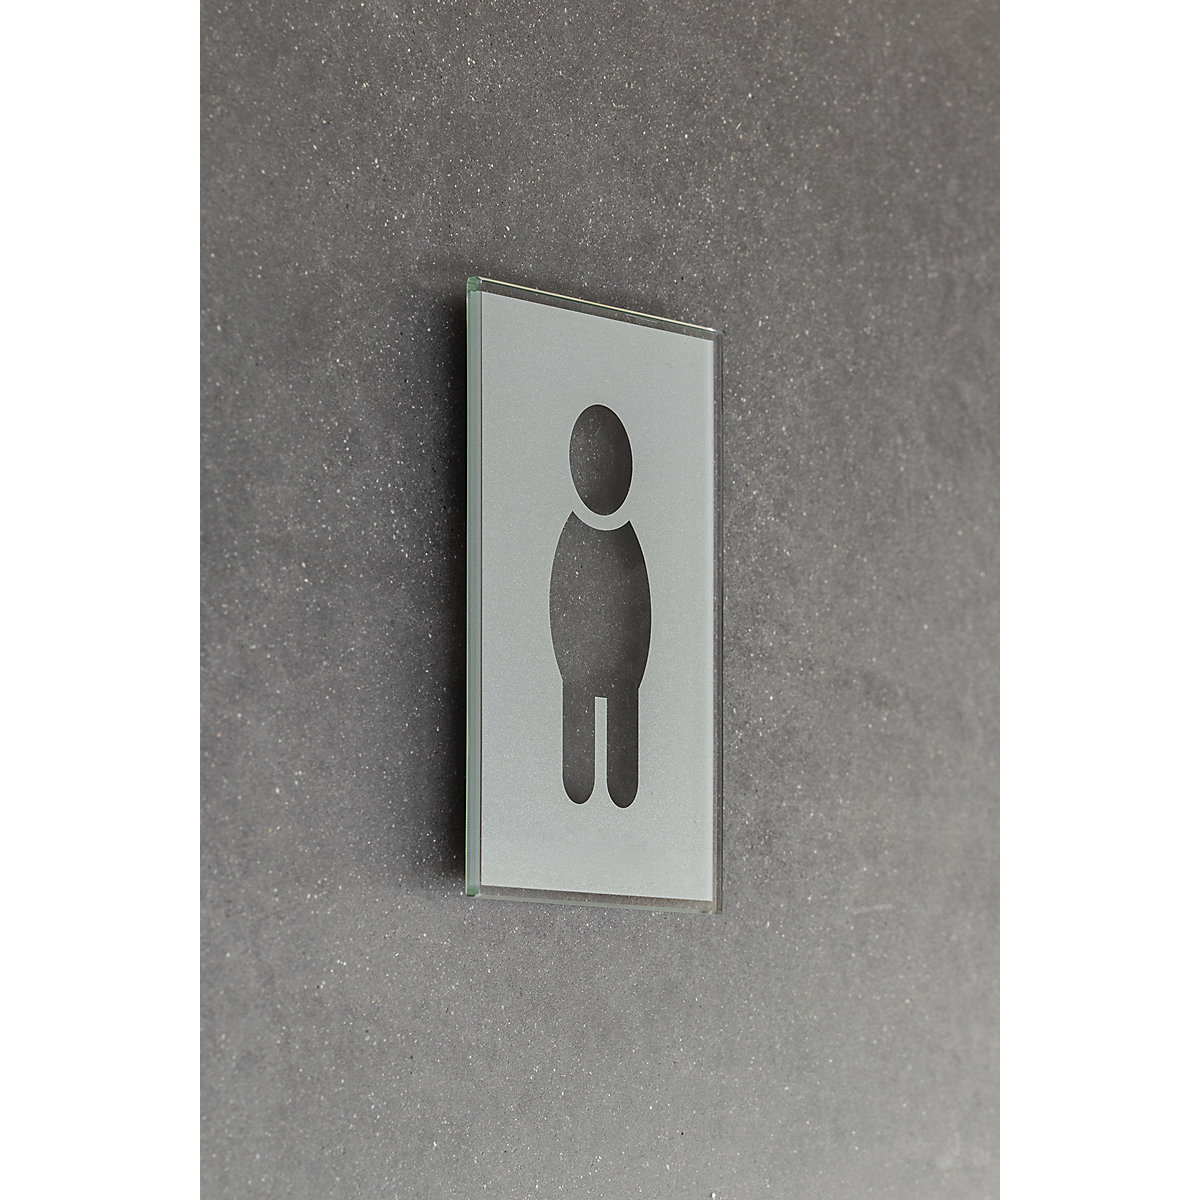 Türschild Piktogramm WC, HxB 148 x 105 mm, selbstklebend, Herren